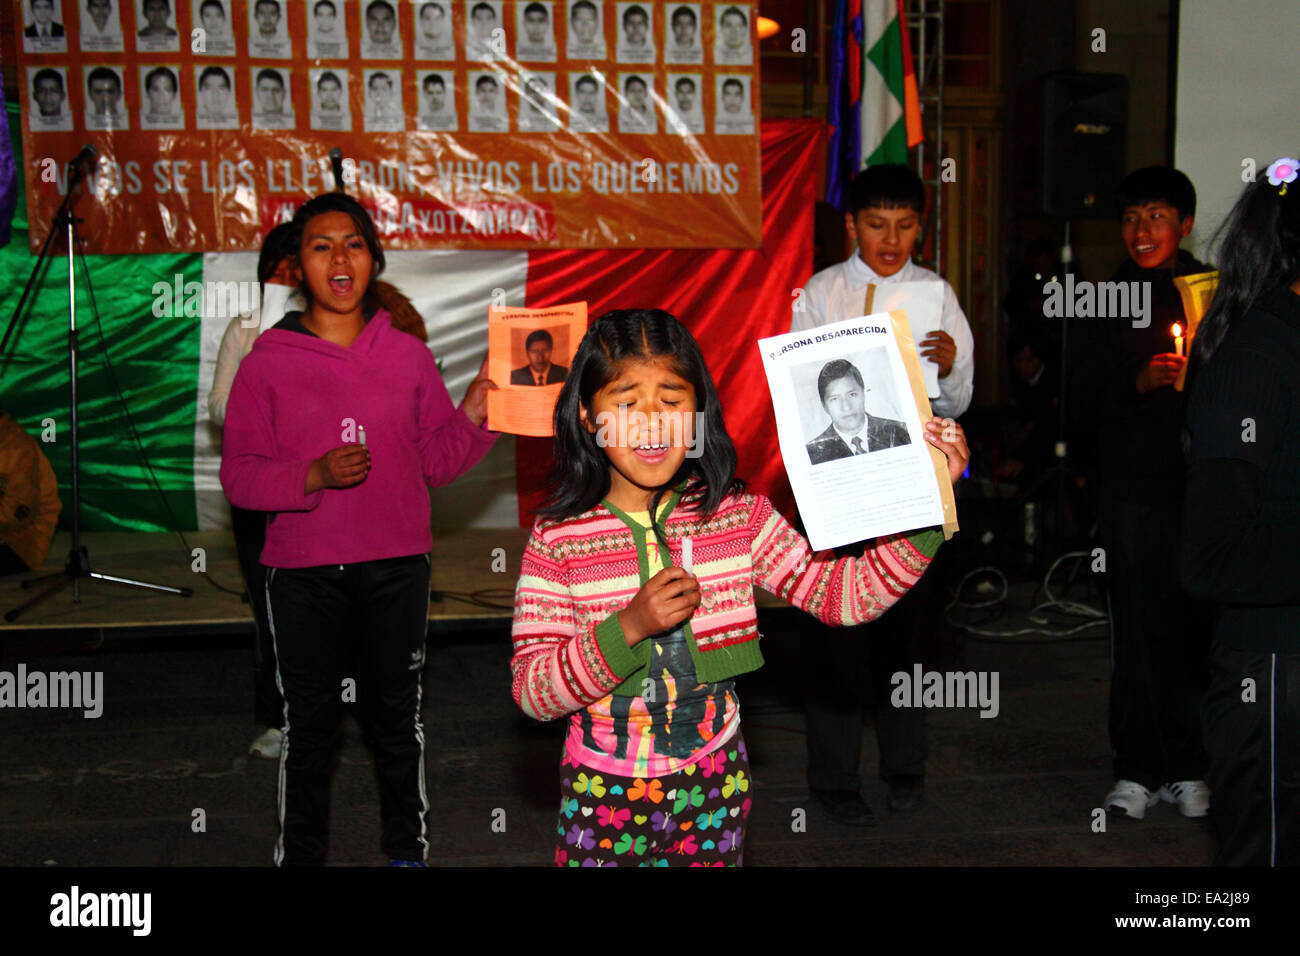 LA PAZ, BOLIVIEN, 5. November 2014. Kinder einer Theatergruppe treten bei einer Veranstaltung auf, die organisiert wurde, um Solidarität mit den 43 vermissten Studenten in Mexiko zu zeigen und ihre sichere Freilassung zu fordern. Die Schüler (die von einer Lehrerschule in Ayotzinapa kamen) verschwanden nach Zusammenprallen mit der Polizei in der Nacht des 26. September in der Stadt Iguala im Bundesstaat Guerrero. Stockfoto